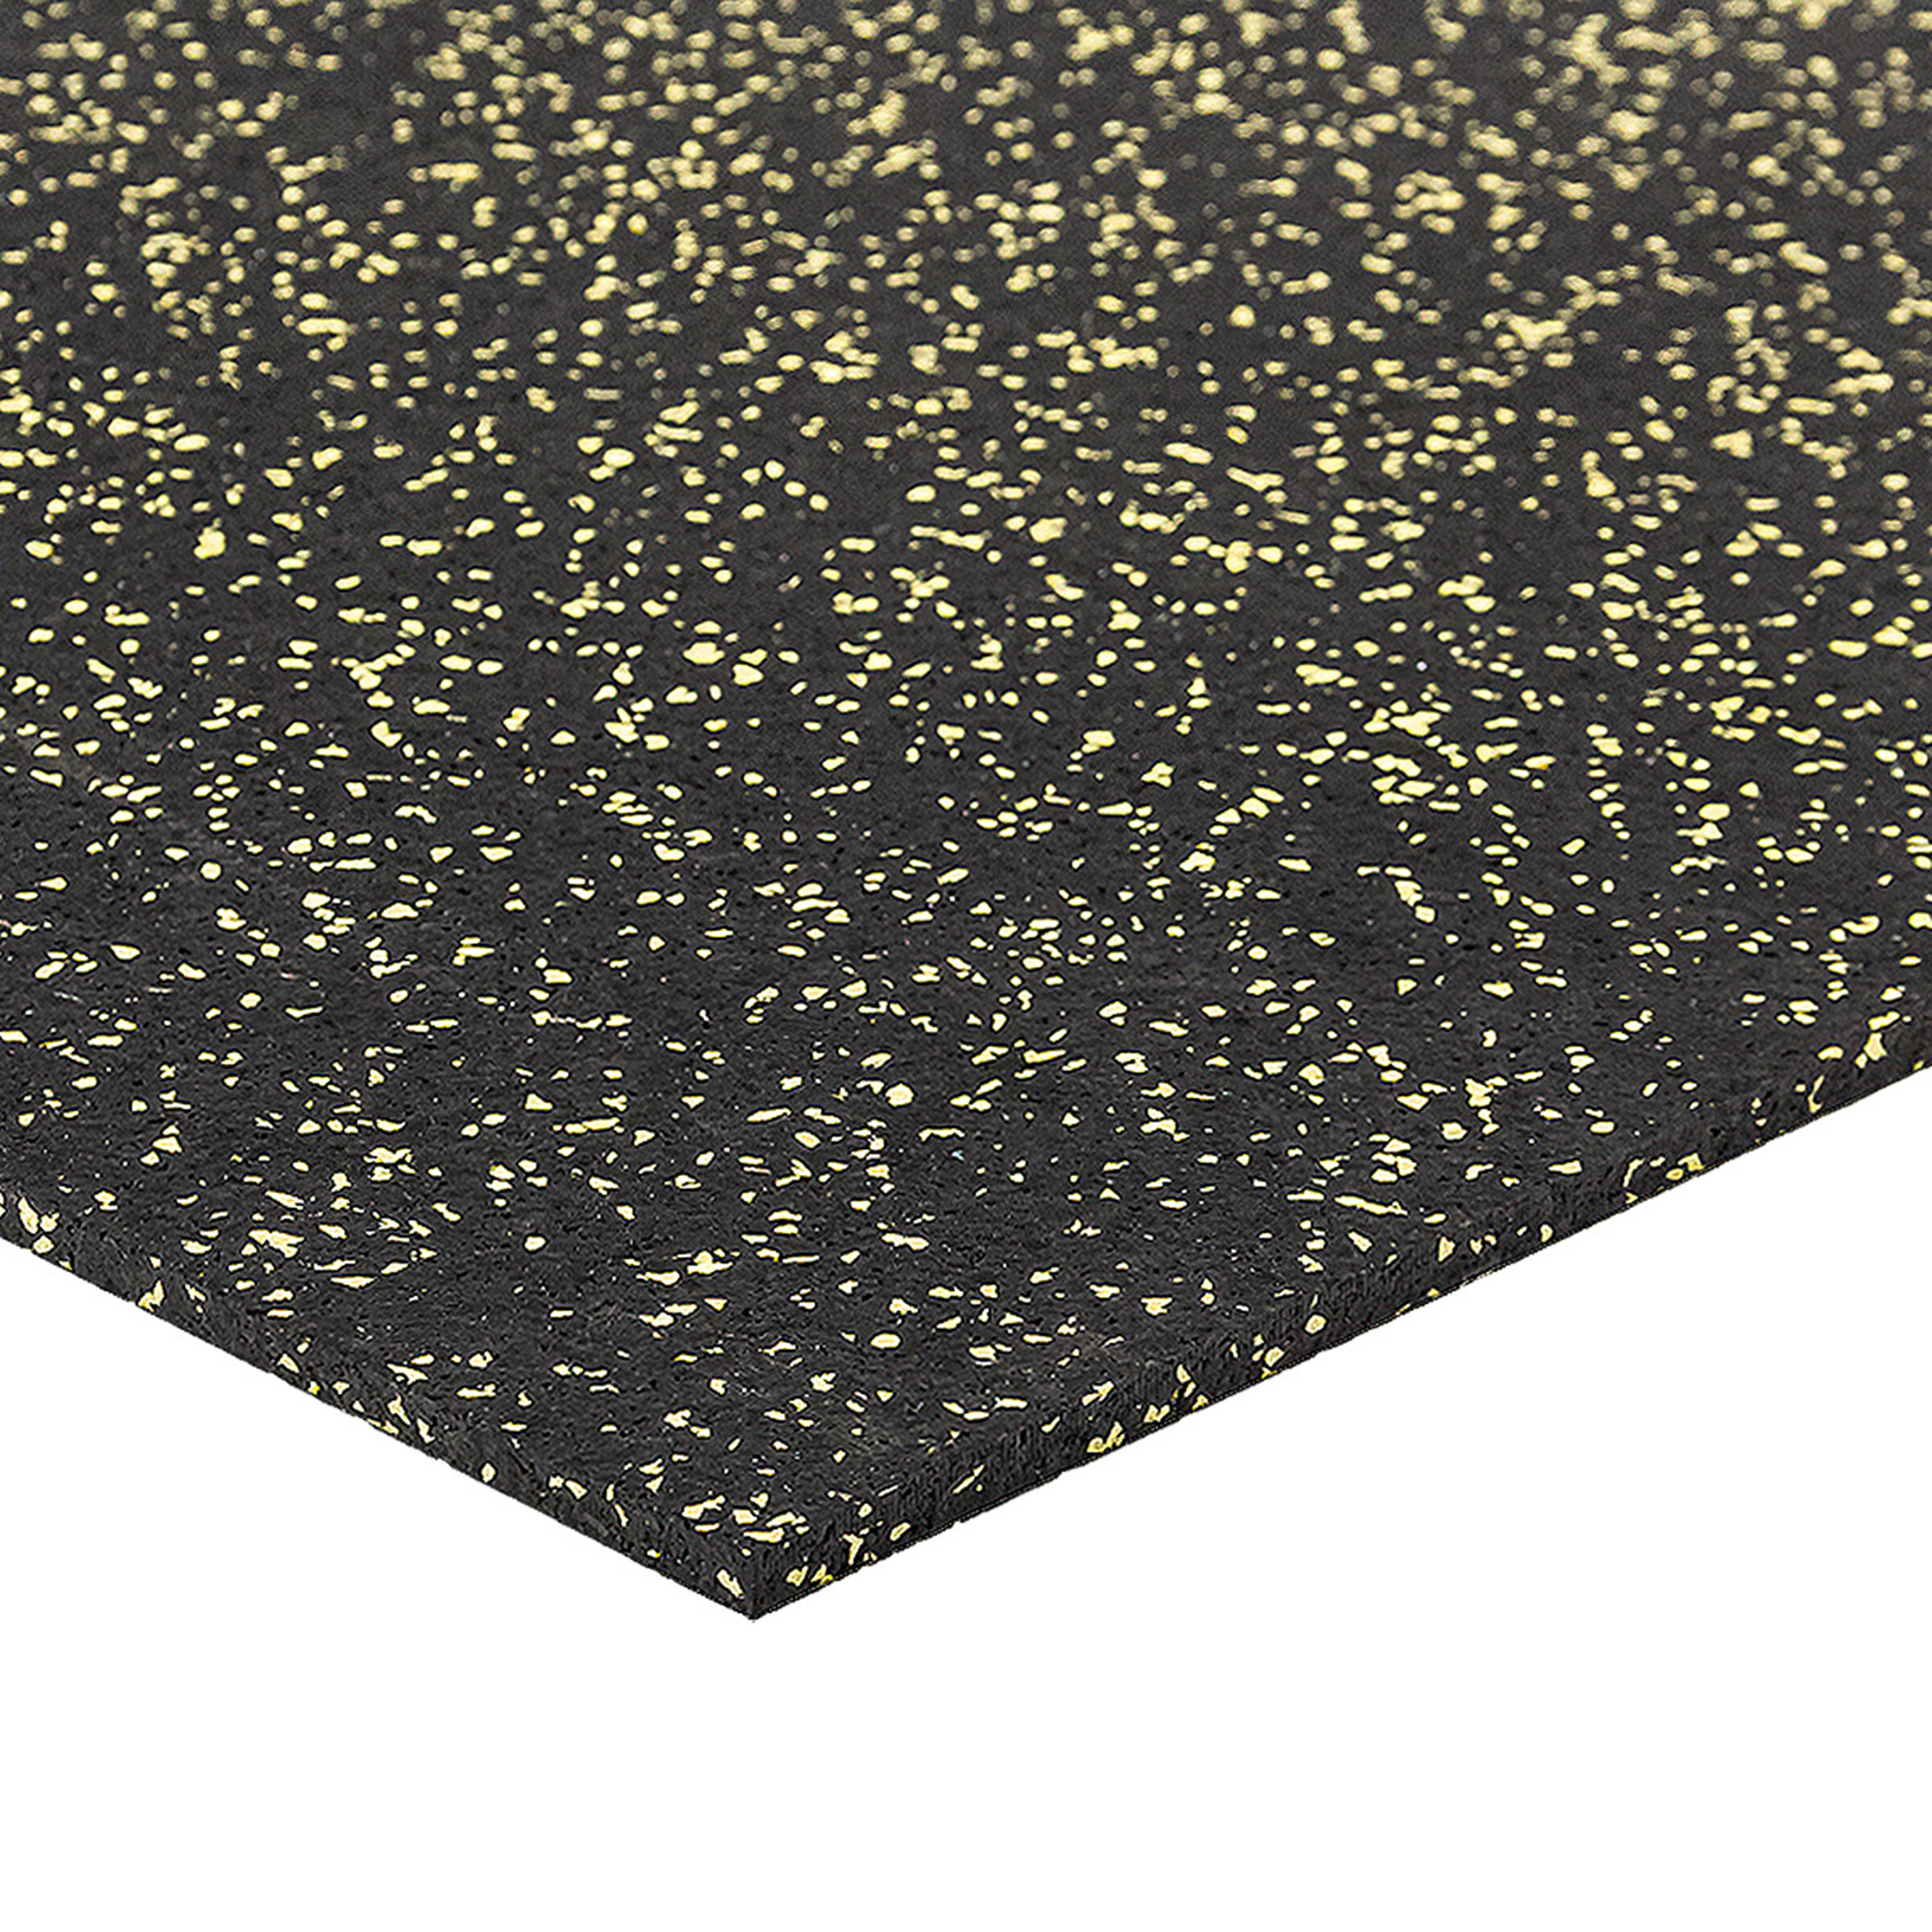 Černo-žlutá podlahová guma FLOMA FitFlo SF1050 - délka 100 cm, šířka 100 cm, výška 0,8 cm